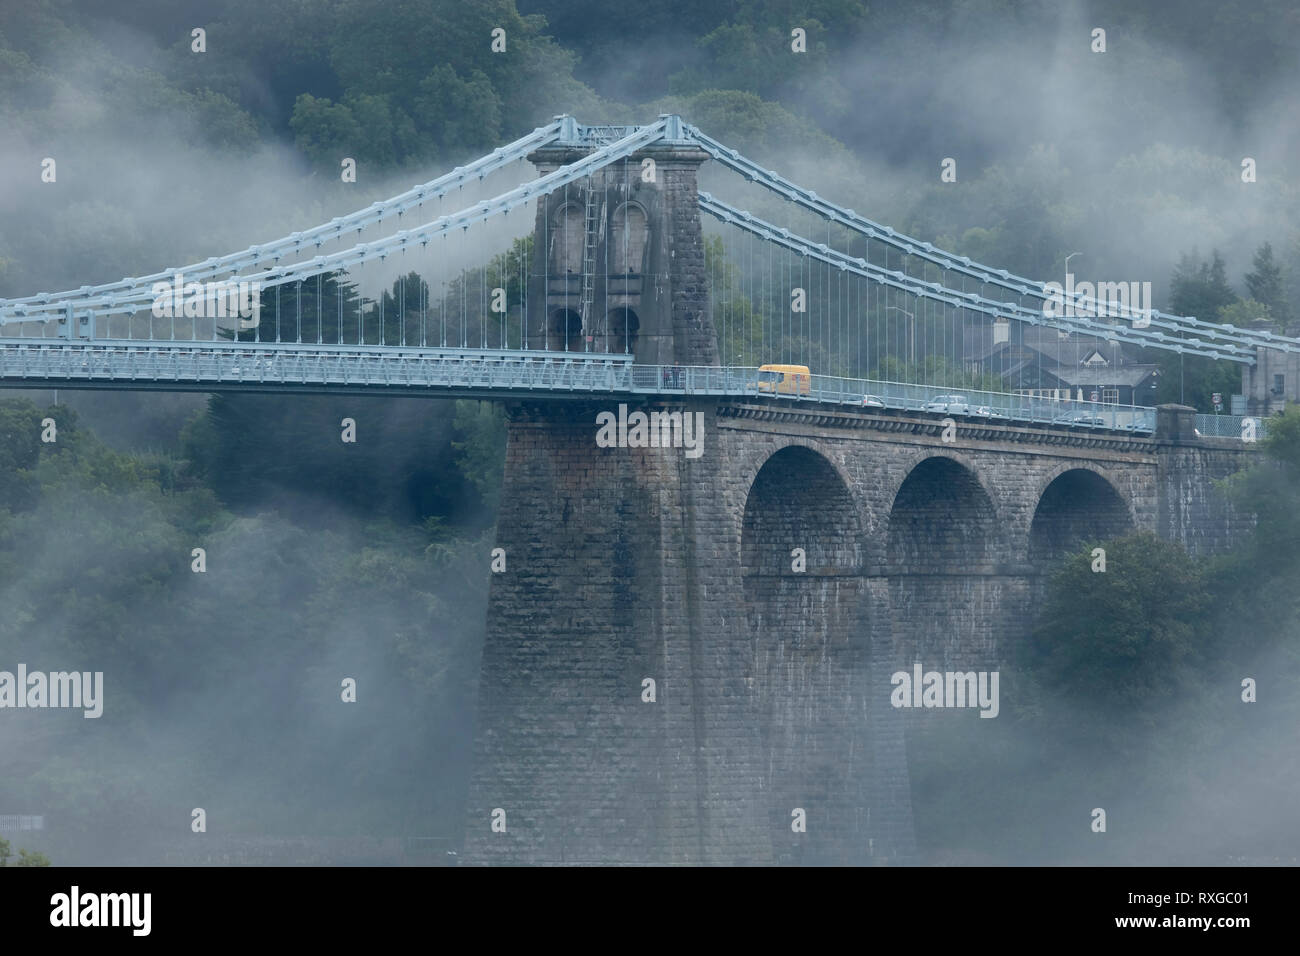 Les brouillards de Menai, le Pont Suspendu de Menai dans le brouillard, Anglesey, au nord du Pays de Galles, Royaume-Uni Banque D'Images